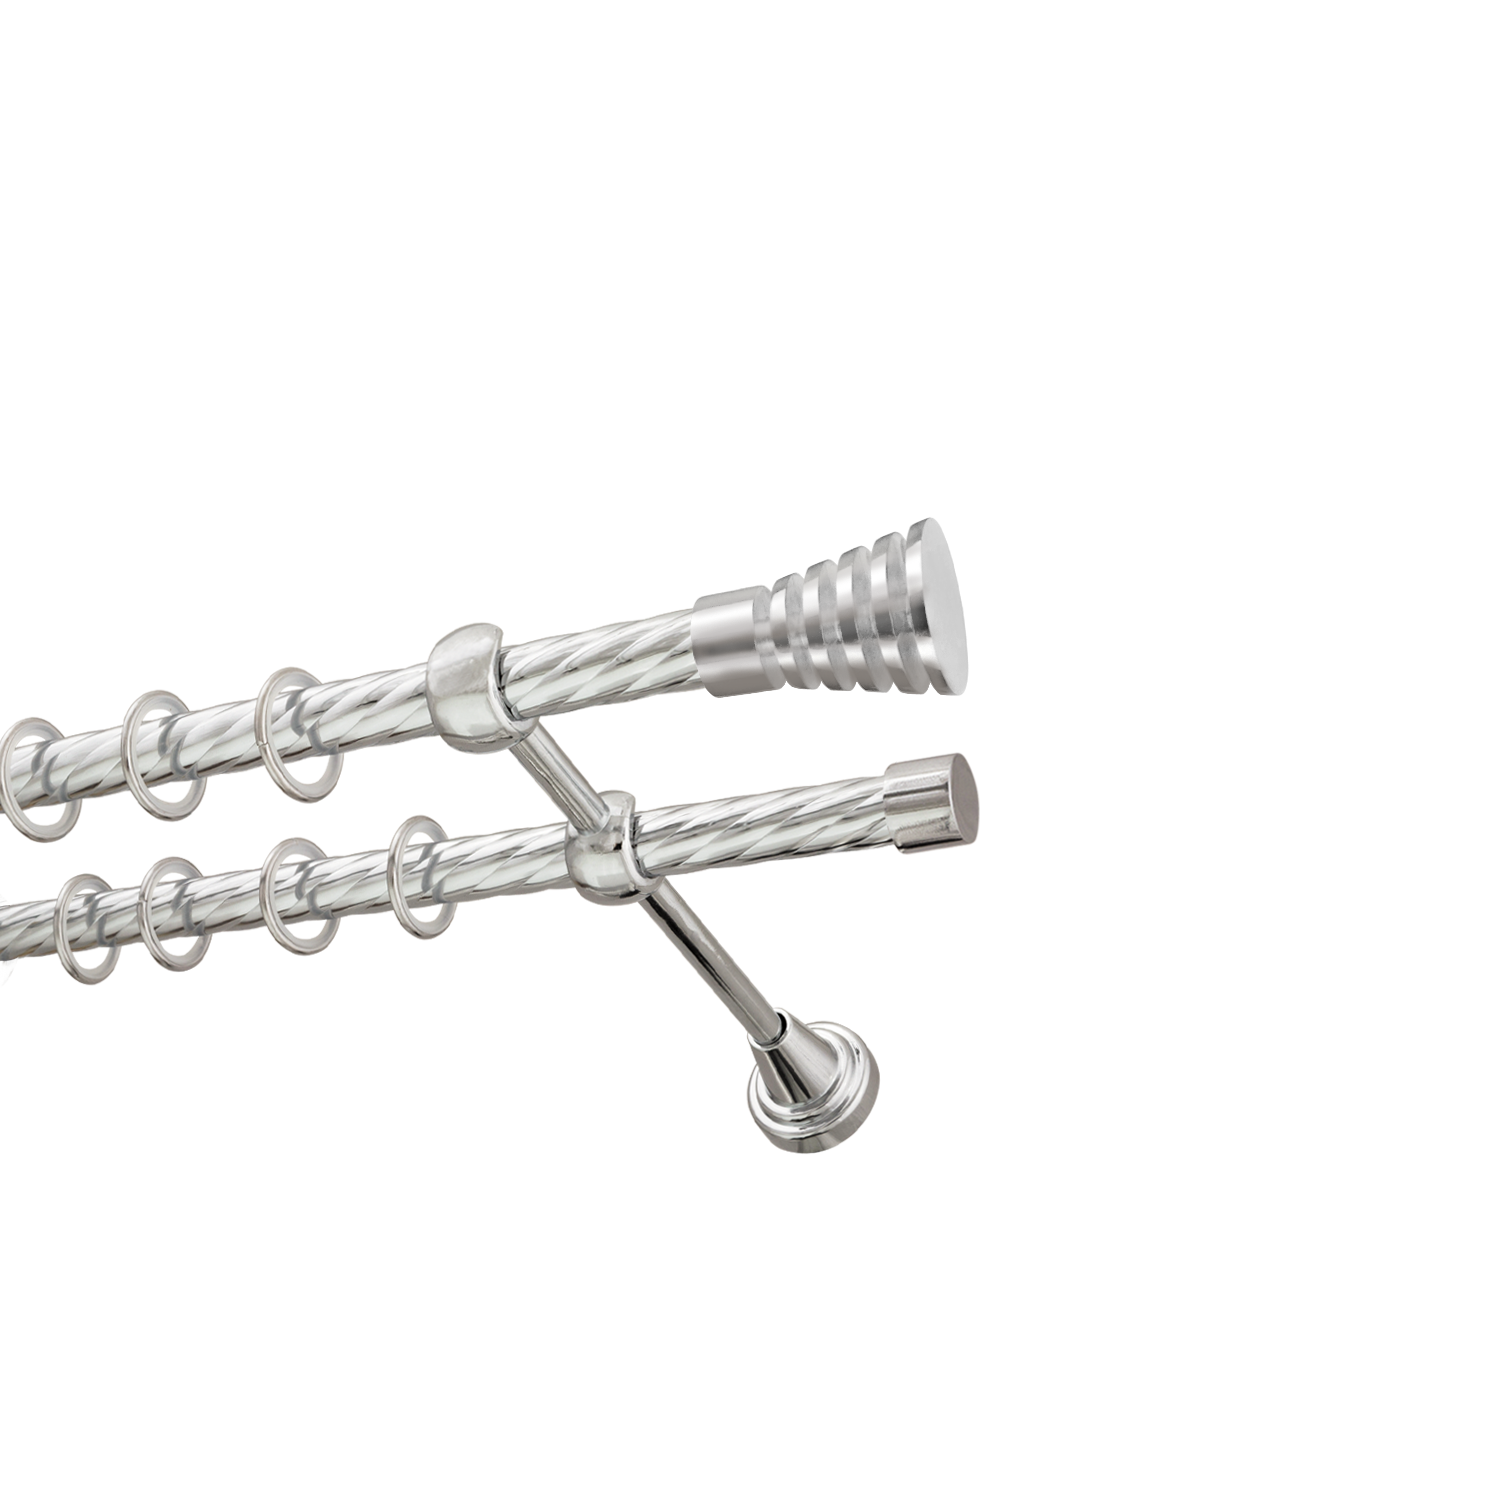 Металлический карниз для штор Верона, двухрядный 16/16 мм, серебро, витая штанга, длина 300 см - фото Wikidecor.ru